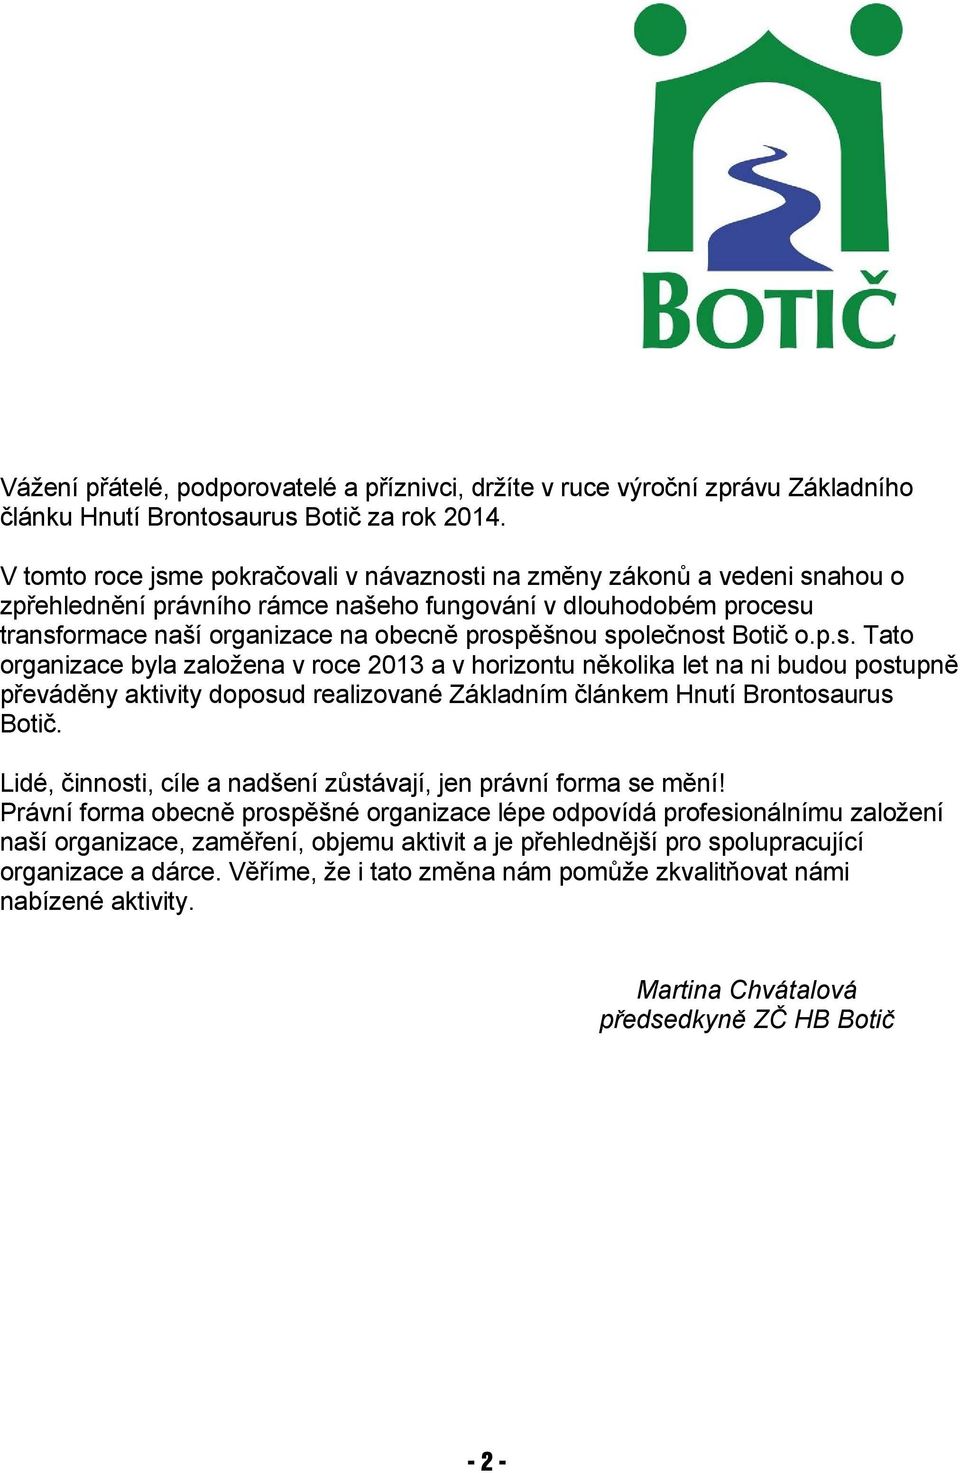 společnost Botič o.p.s. Tato organizace byla založena v roce 2013 a v horizontu několika let na ni budou postupně převáděny aktivity doposud realizované Základním článkem Hnutí Brontosaurus Botič.